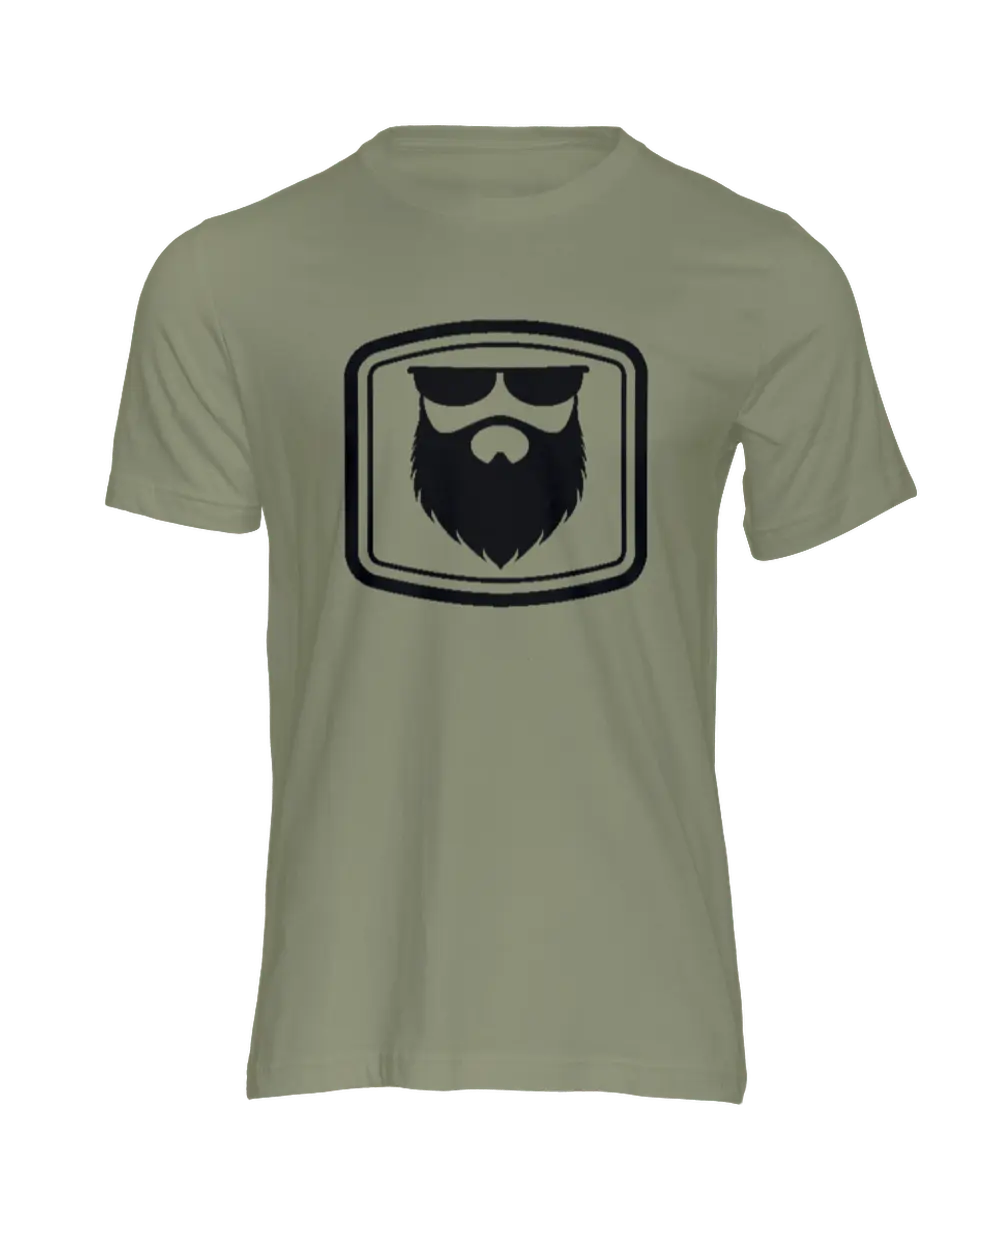 THE OG BEARD 2.0 Army Green Men's T-Shirt